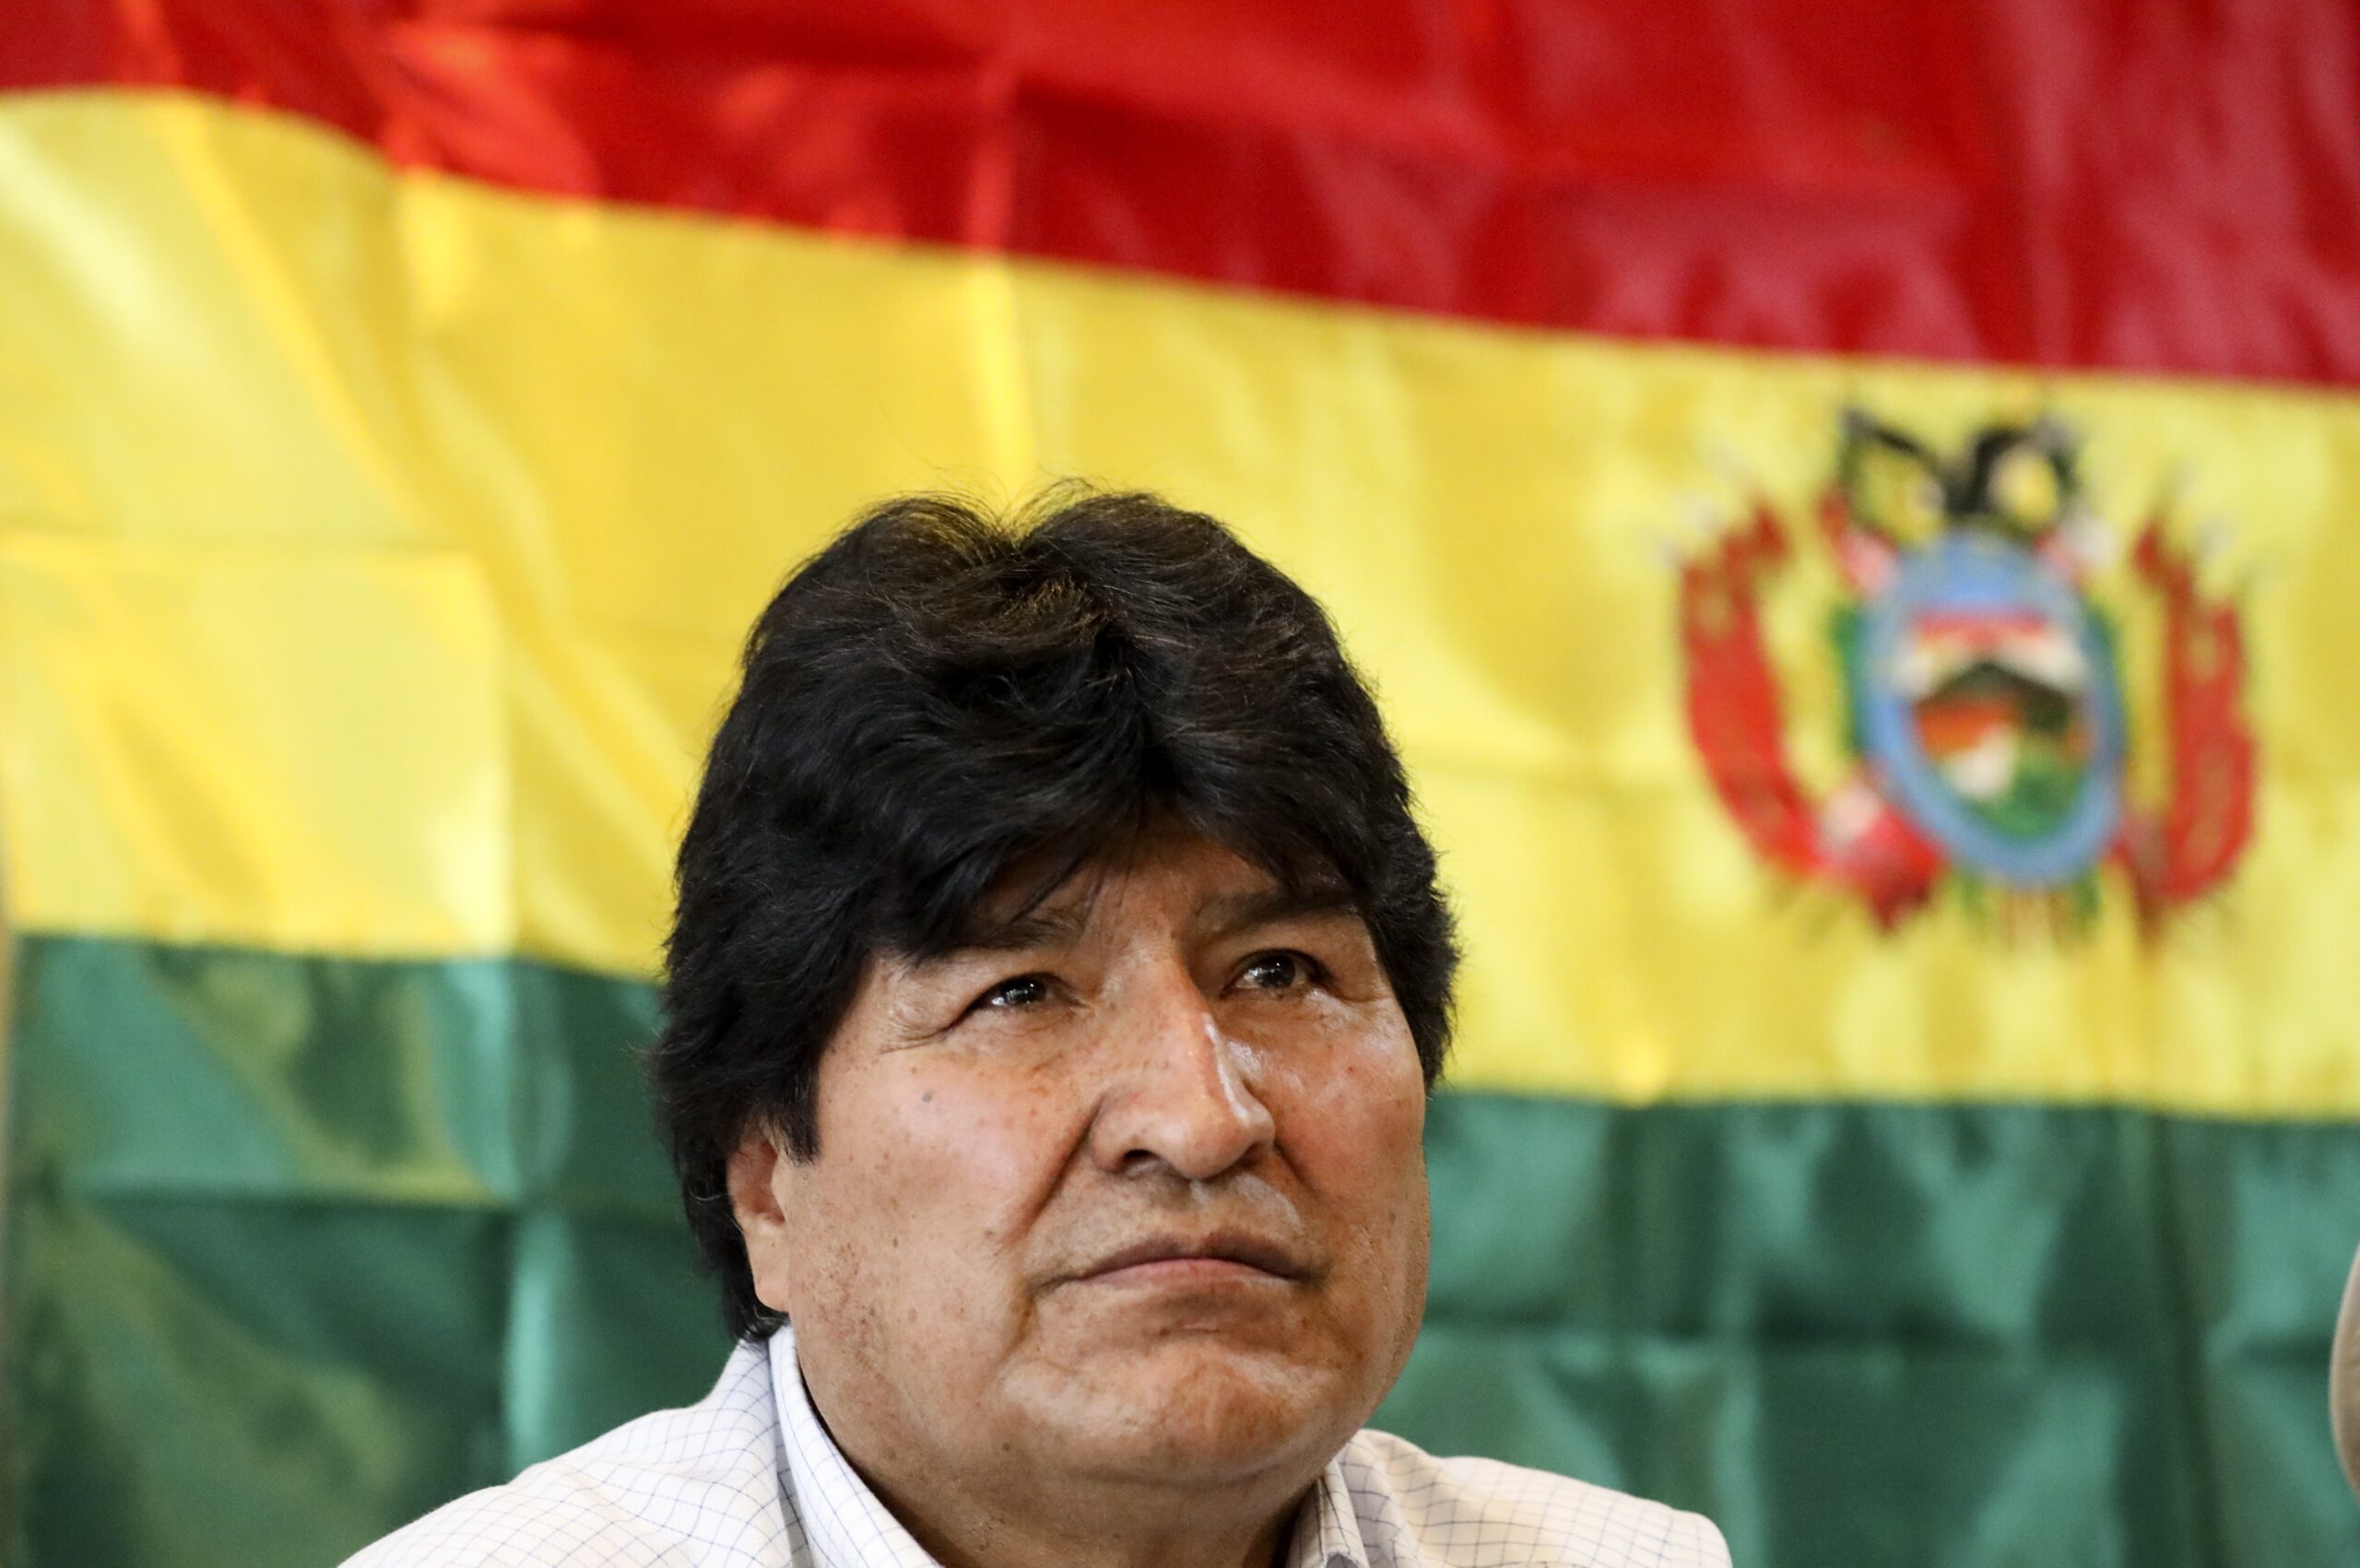 Βολιβία: Η εκλογική επιτροπή ακύρωσε την υποψηφιότητα του Έβο Μοράλες